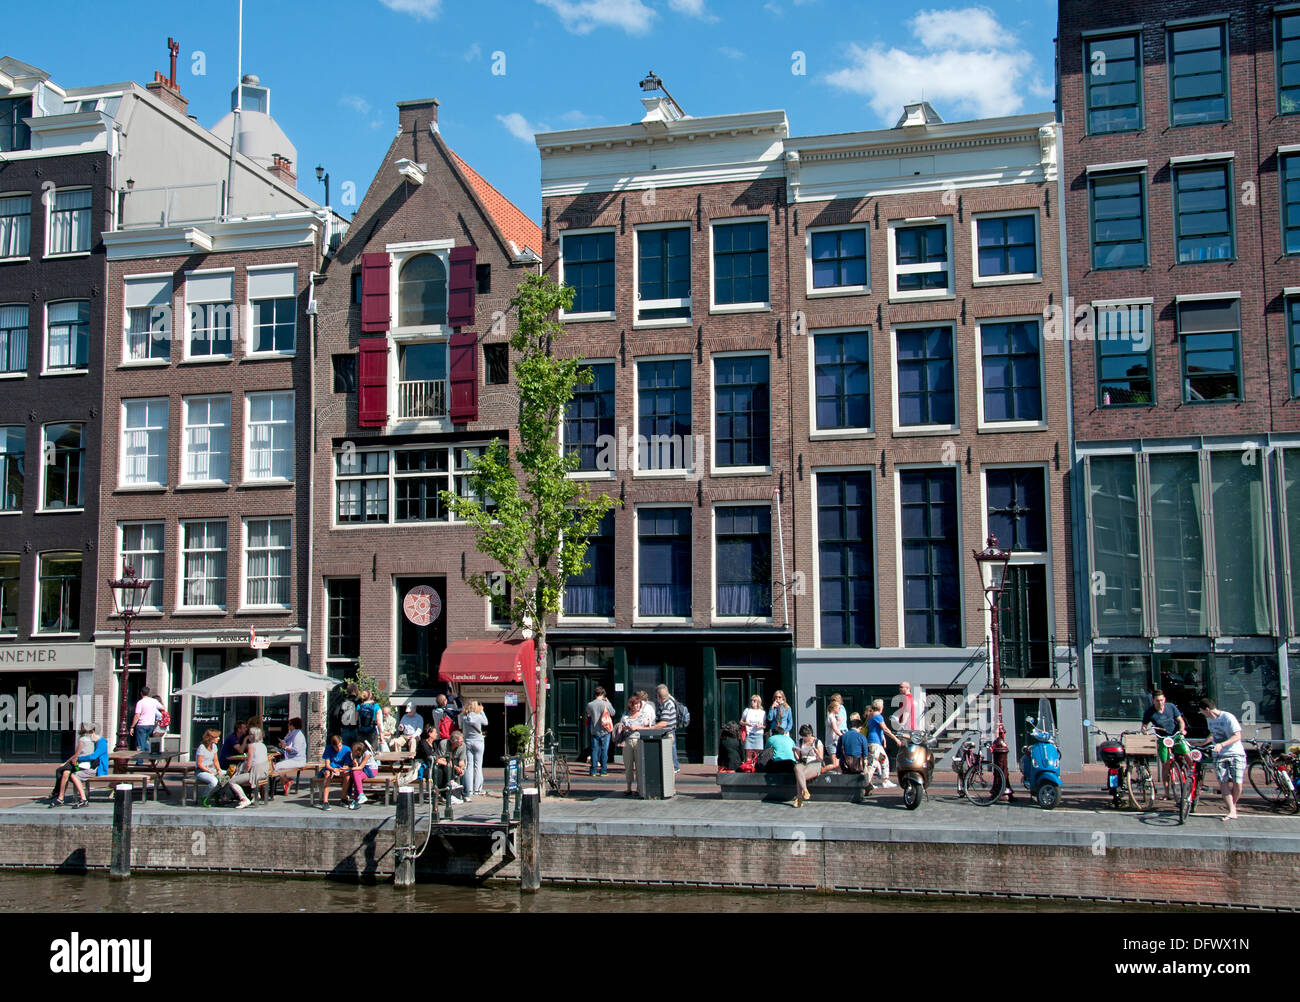 Das Anne Frank Haus Prinsengracht 263-265 Kanal in Amsterdam Niederlande (Museum des jüdischen Krieges Tagebuchschreiberin gewidmet) Stockfoto